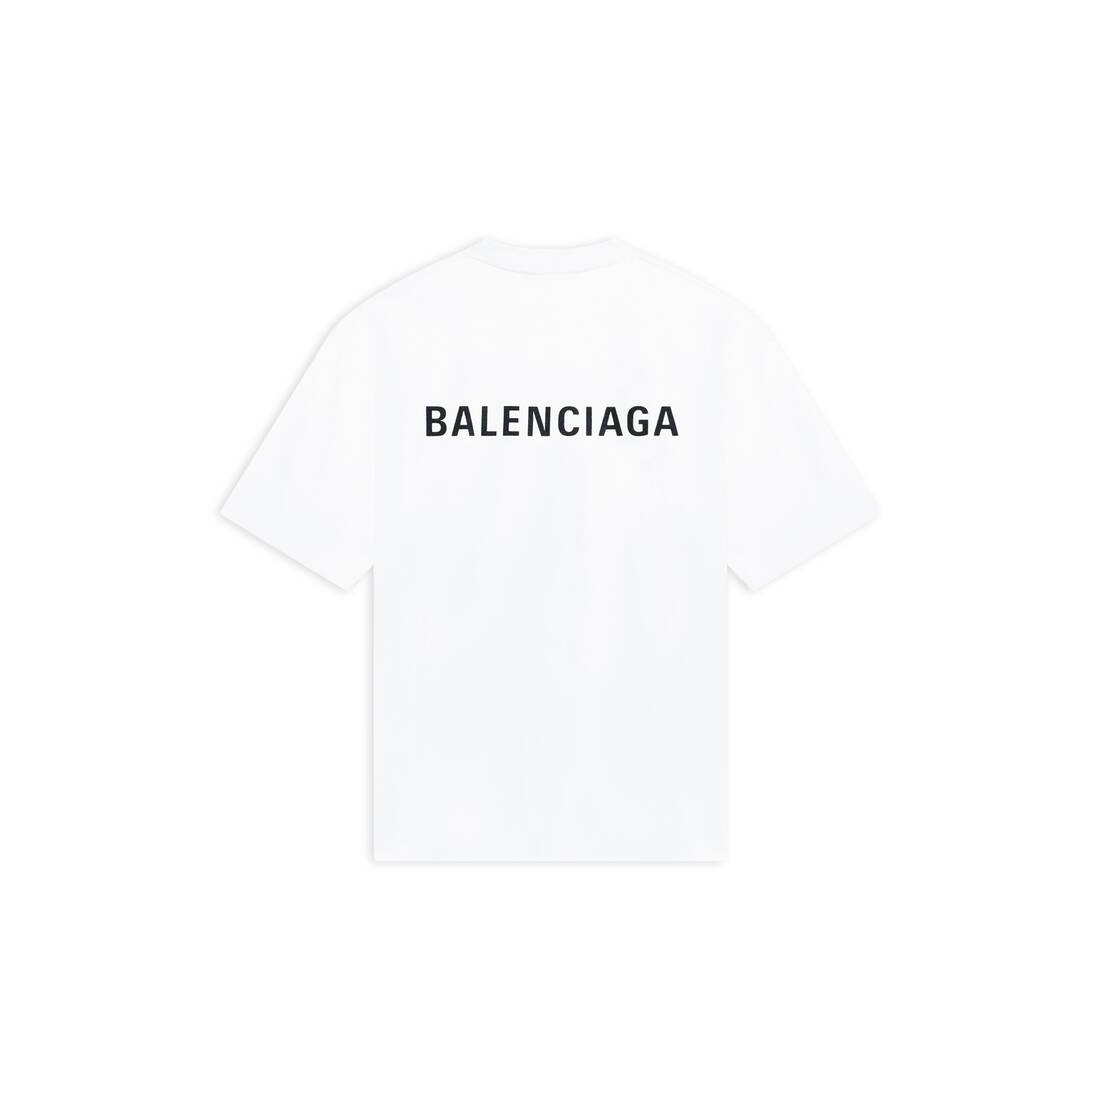 Balenciaga embroideredlogo Tshirt black  MODES